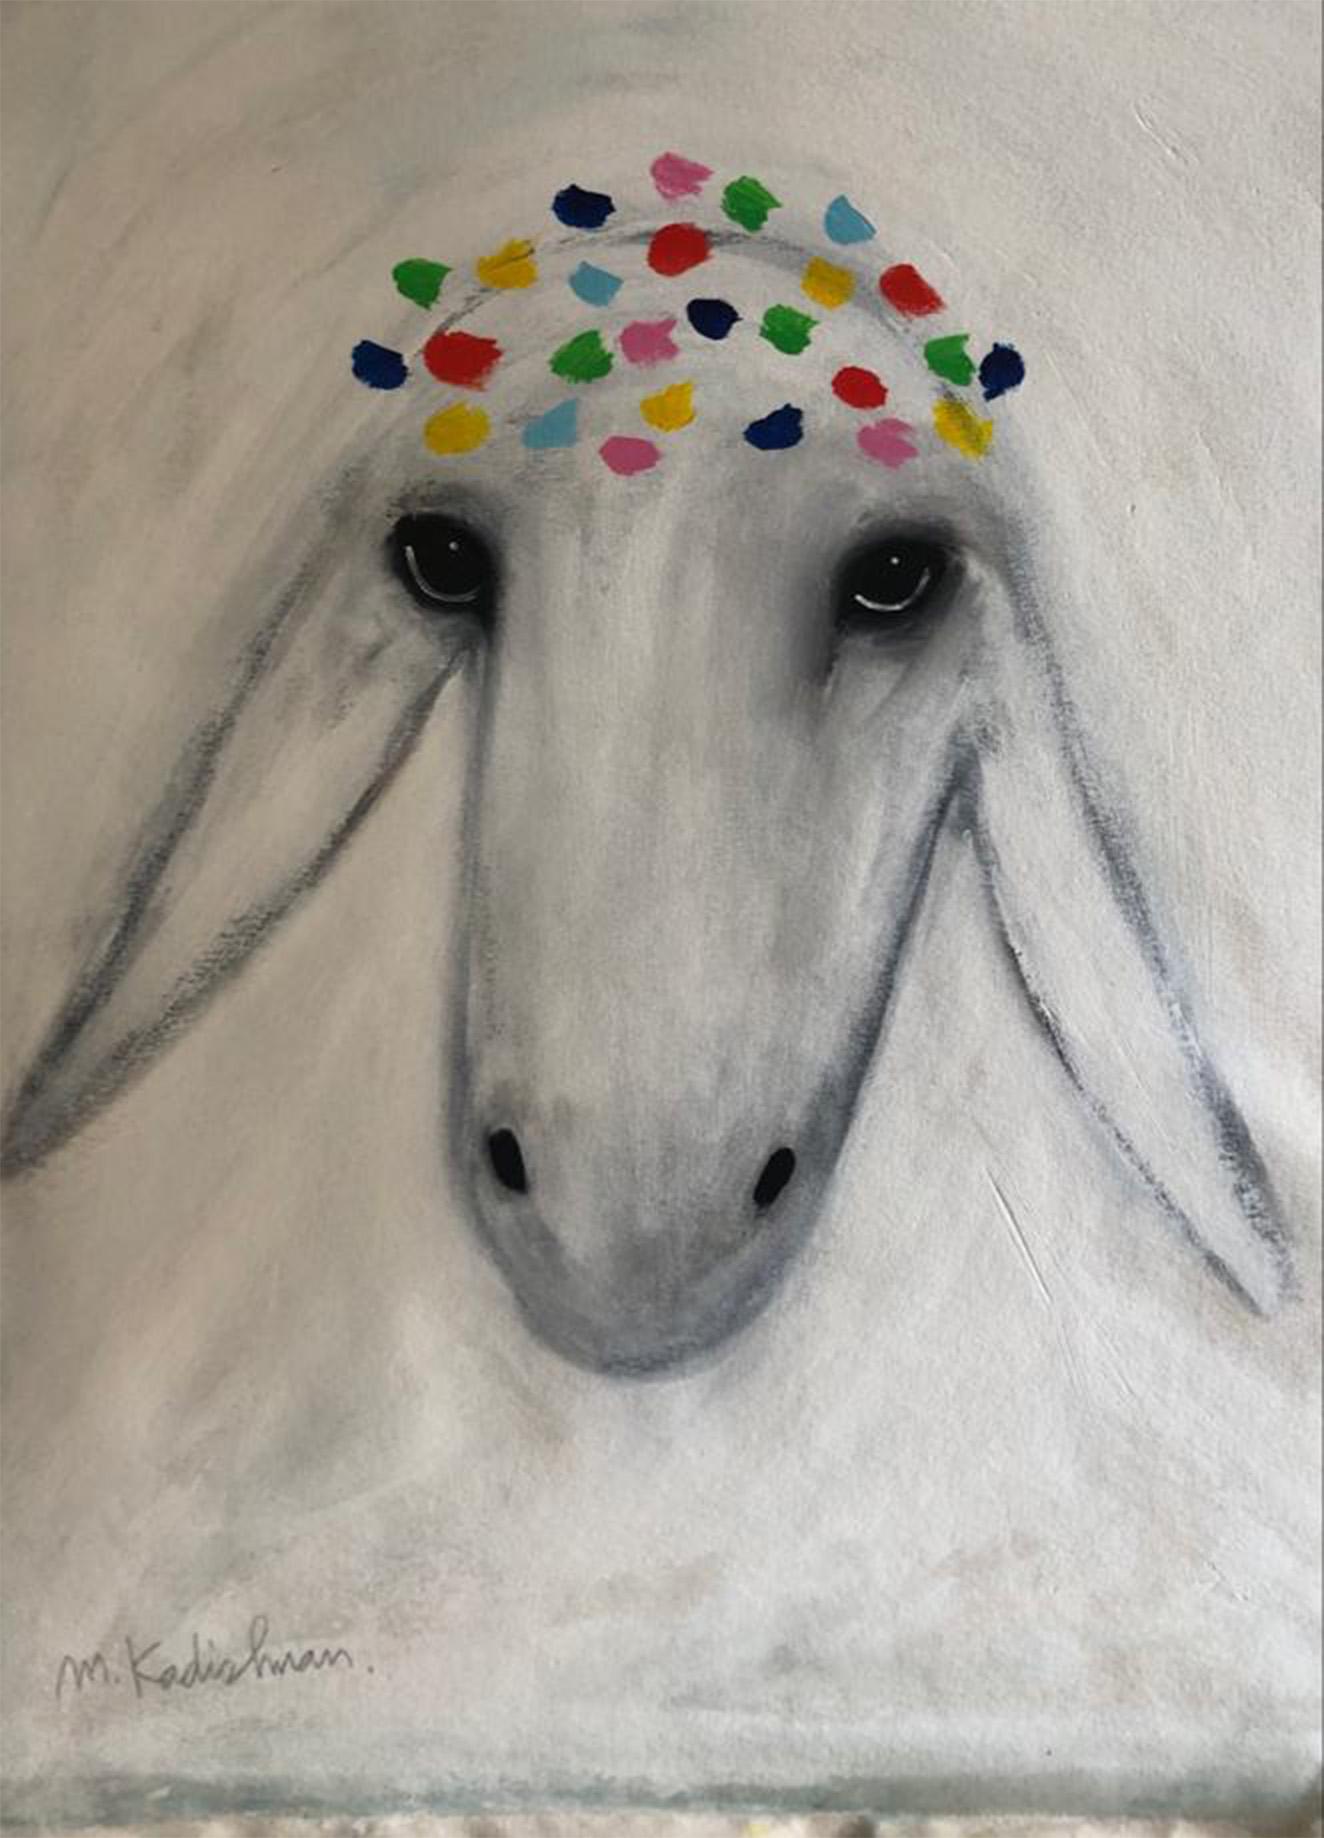 Menashe Kadishman, Sheep head 35, Acrylic on canvas